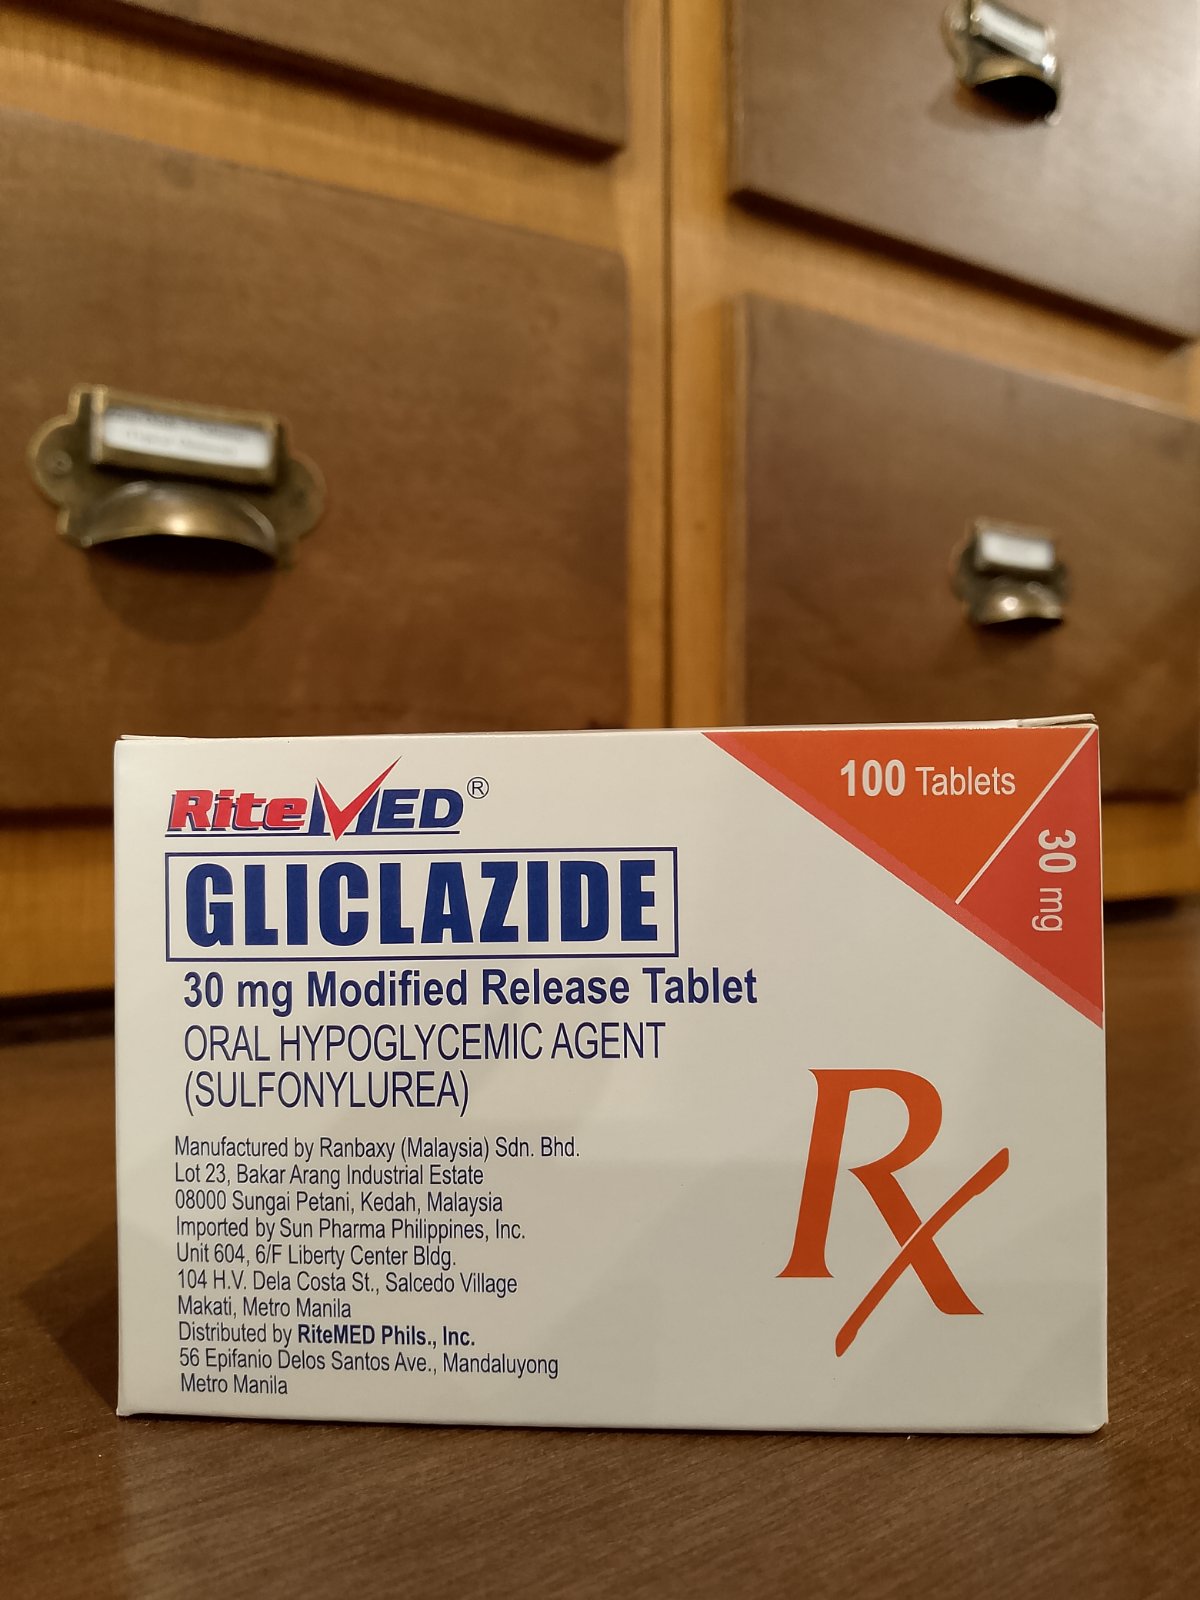 Gliclazide (Ritemed) 30mg Modified Release Tablet